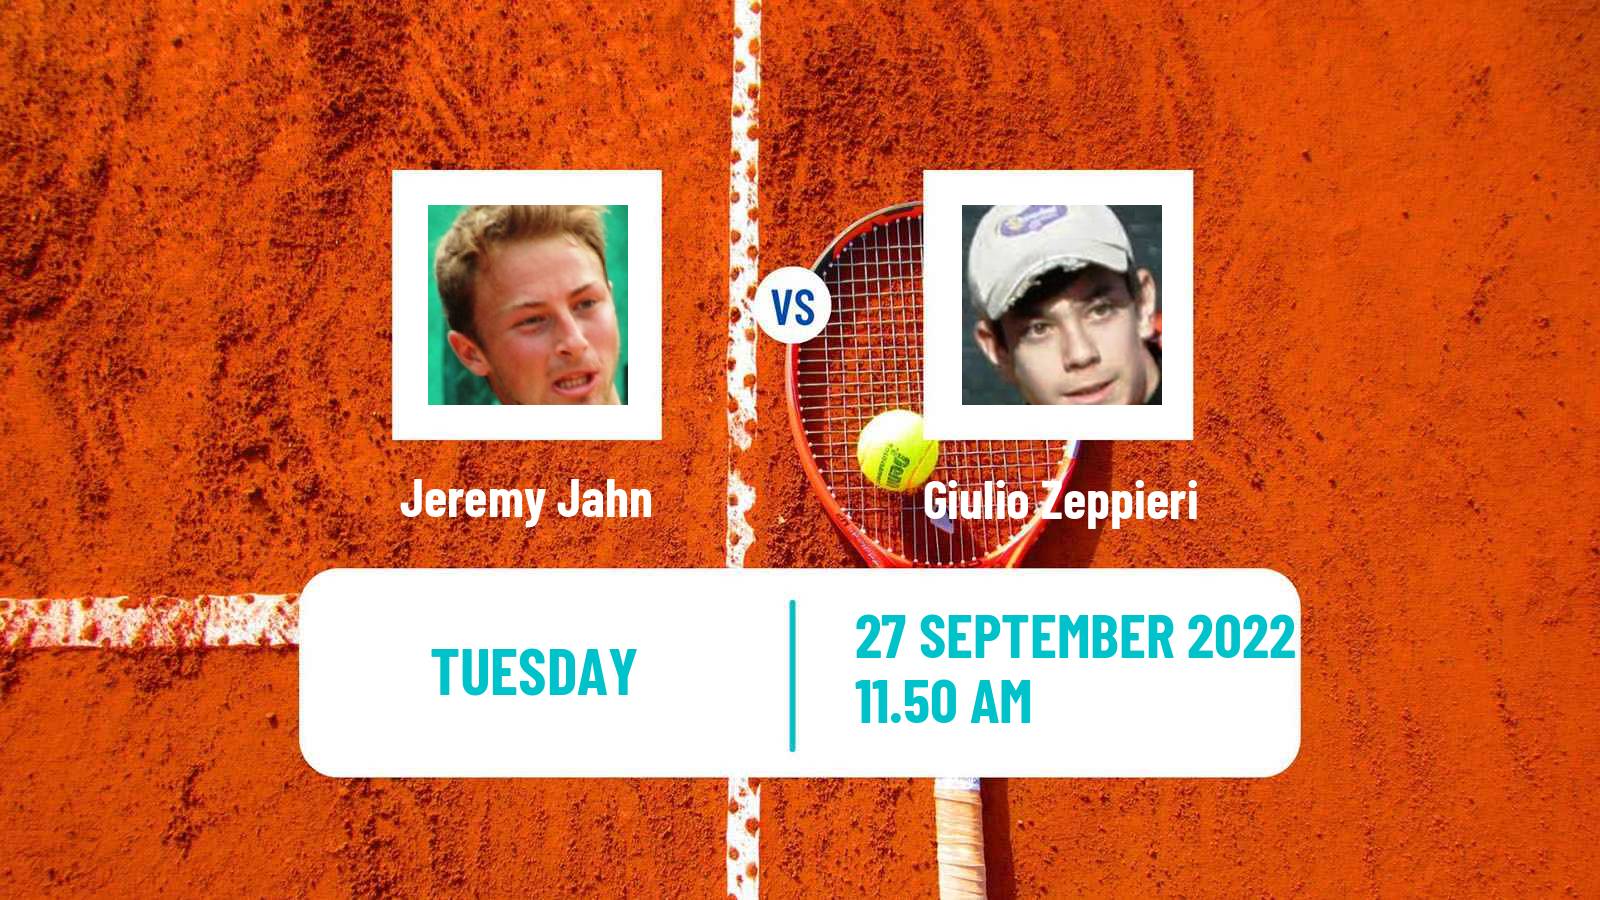 Tennis ATP Challenger Jeremy Jahn - Giulio Zeppieri